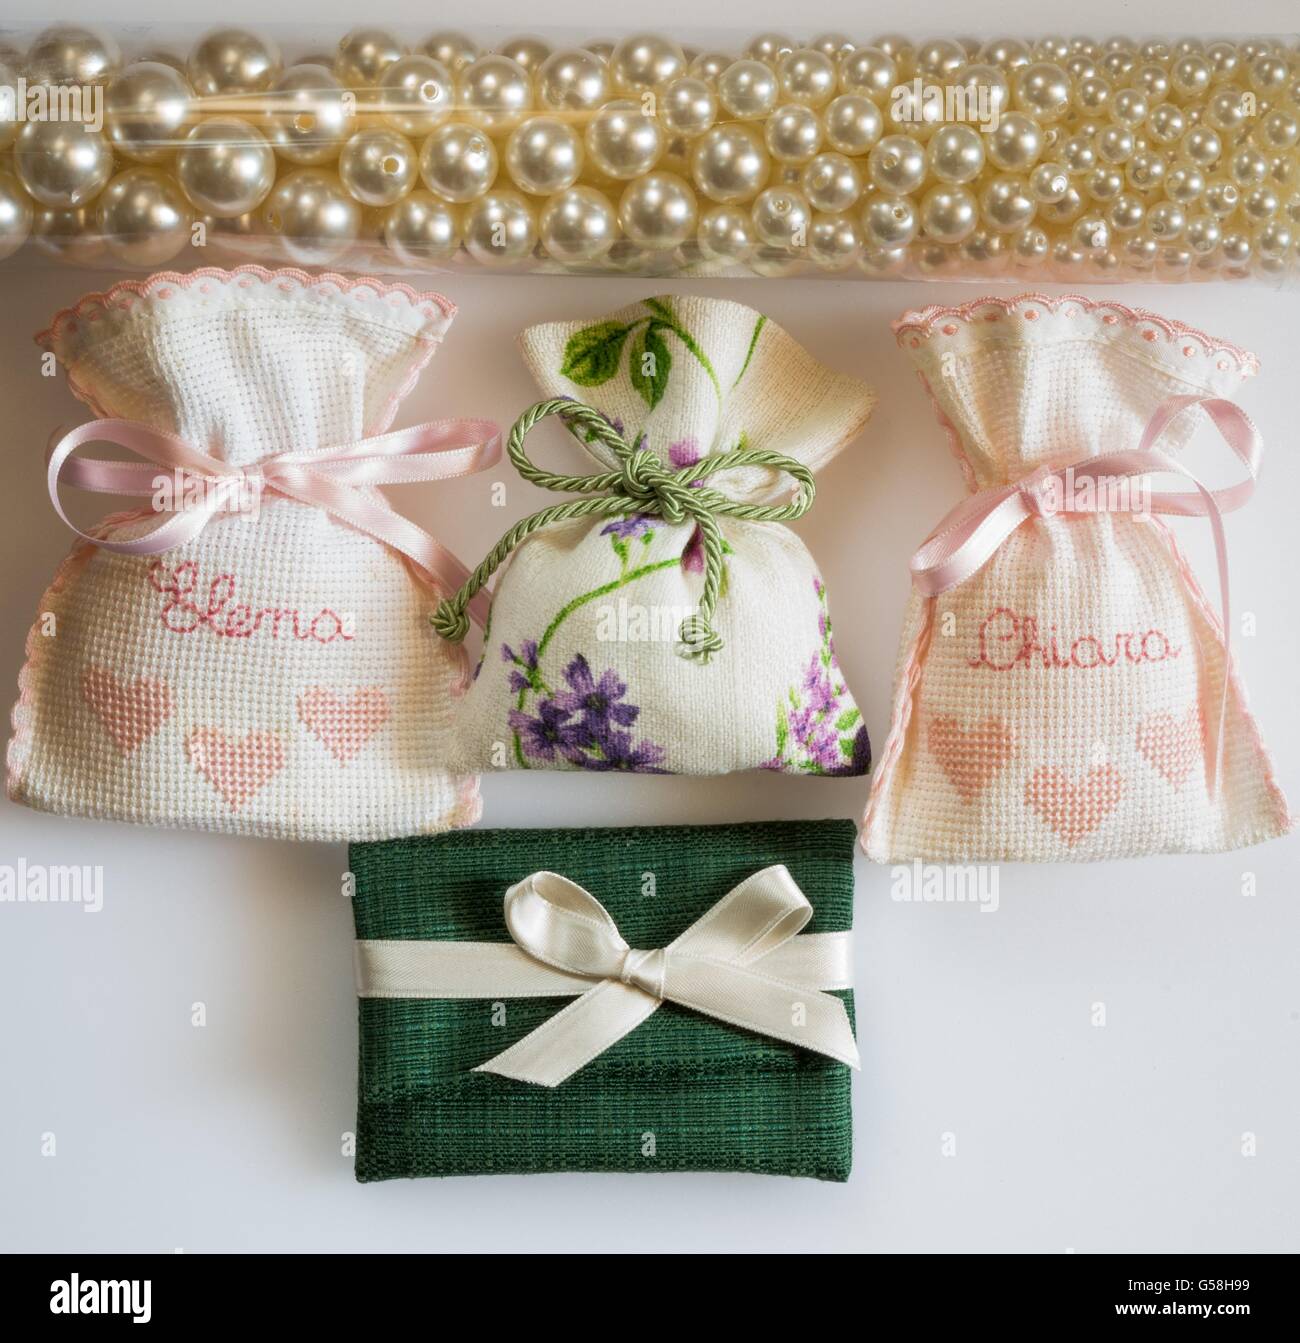 Bomboniera sacchetti contenenti rivestite di zucchero mandorle , date in dono per gli ospiti come un souvenir Foto Stock